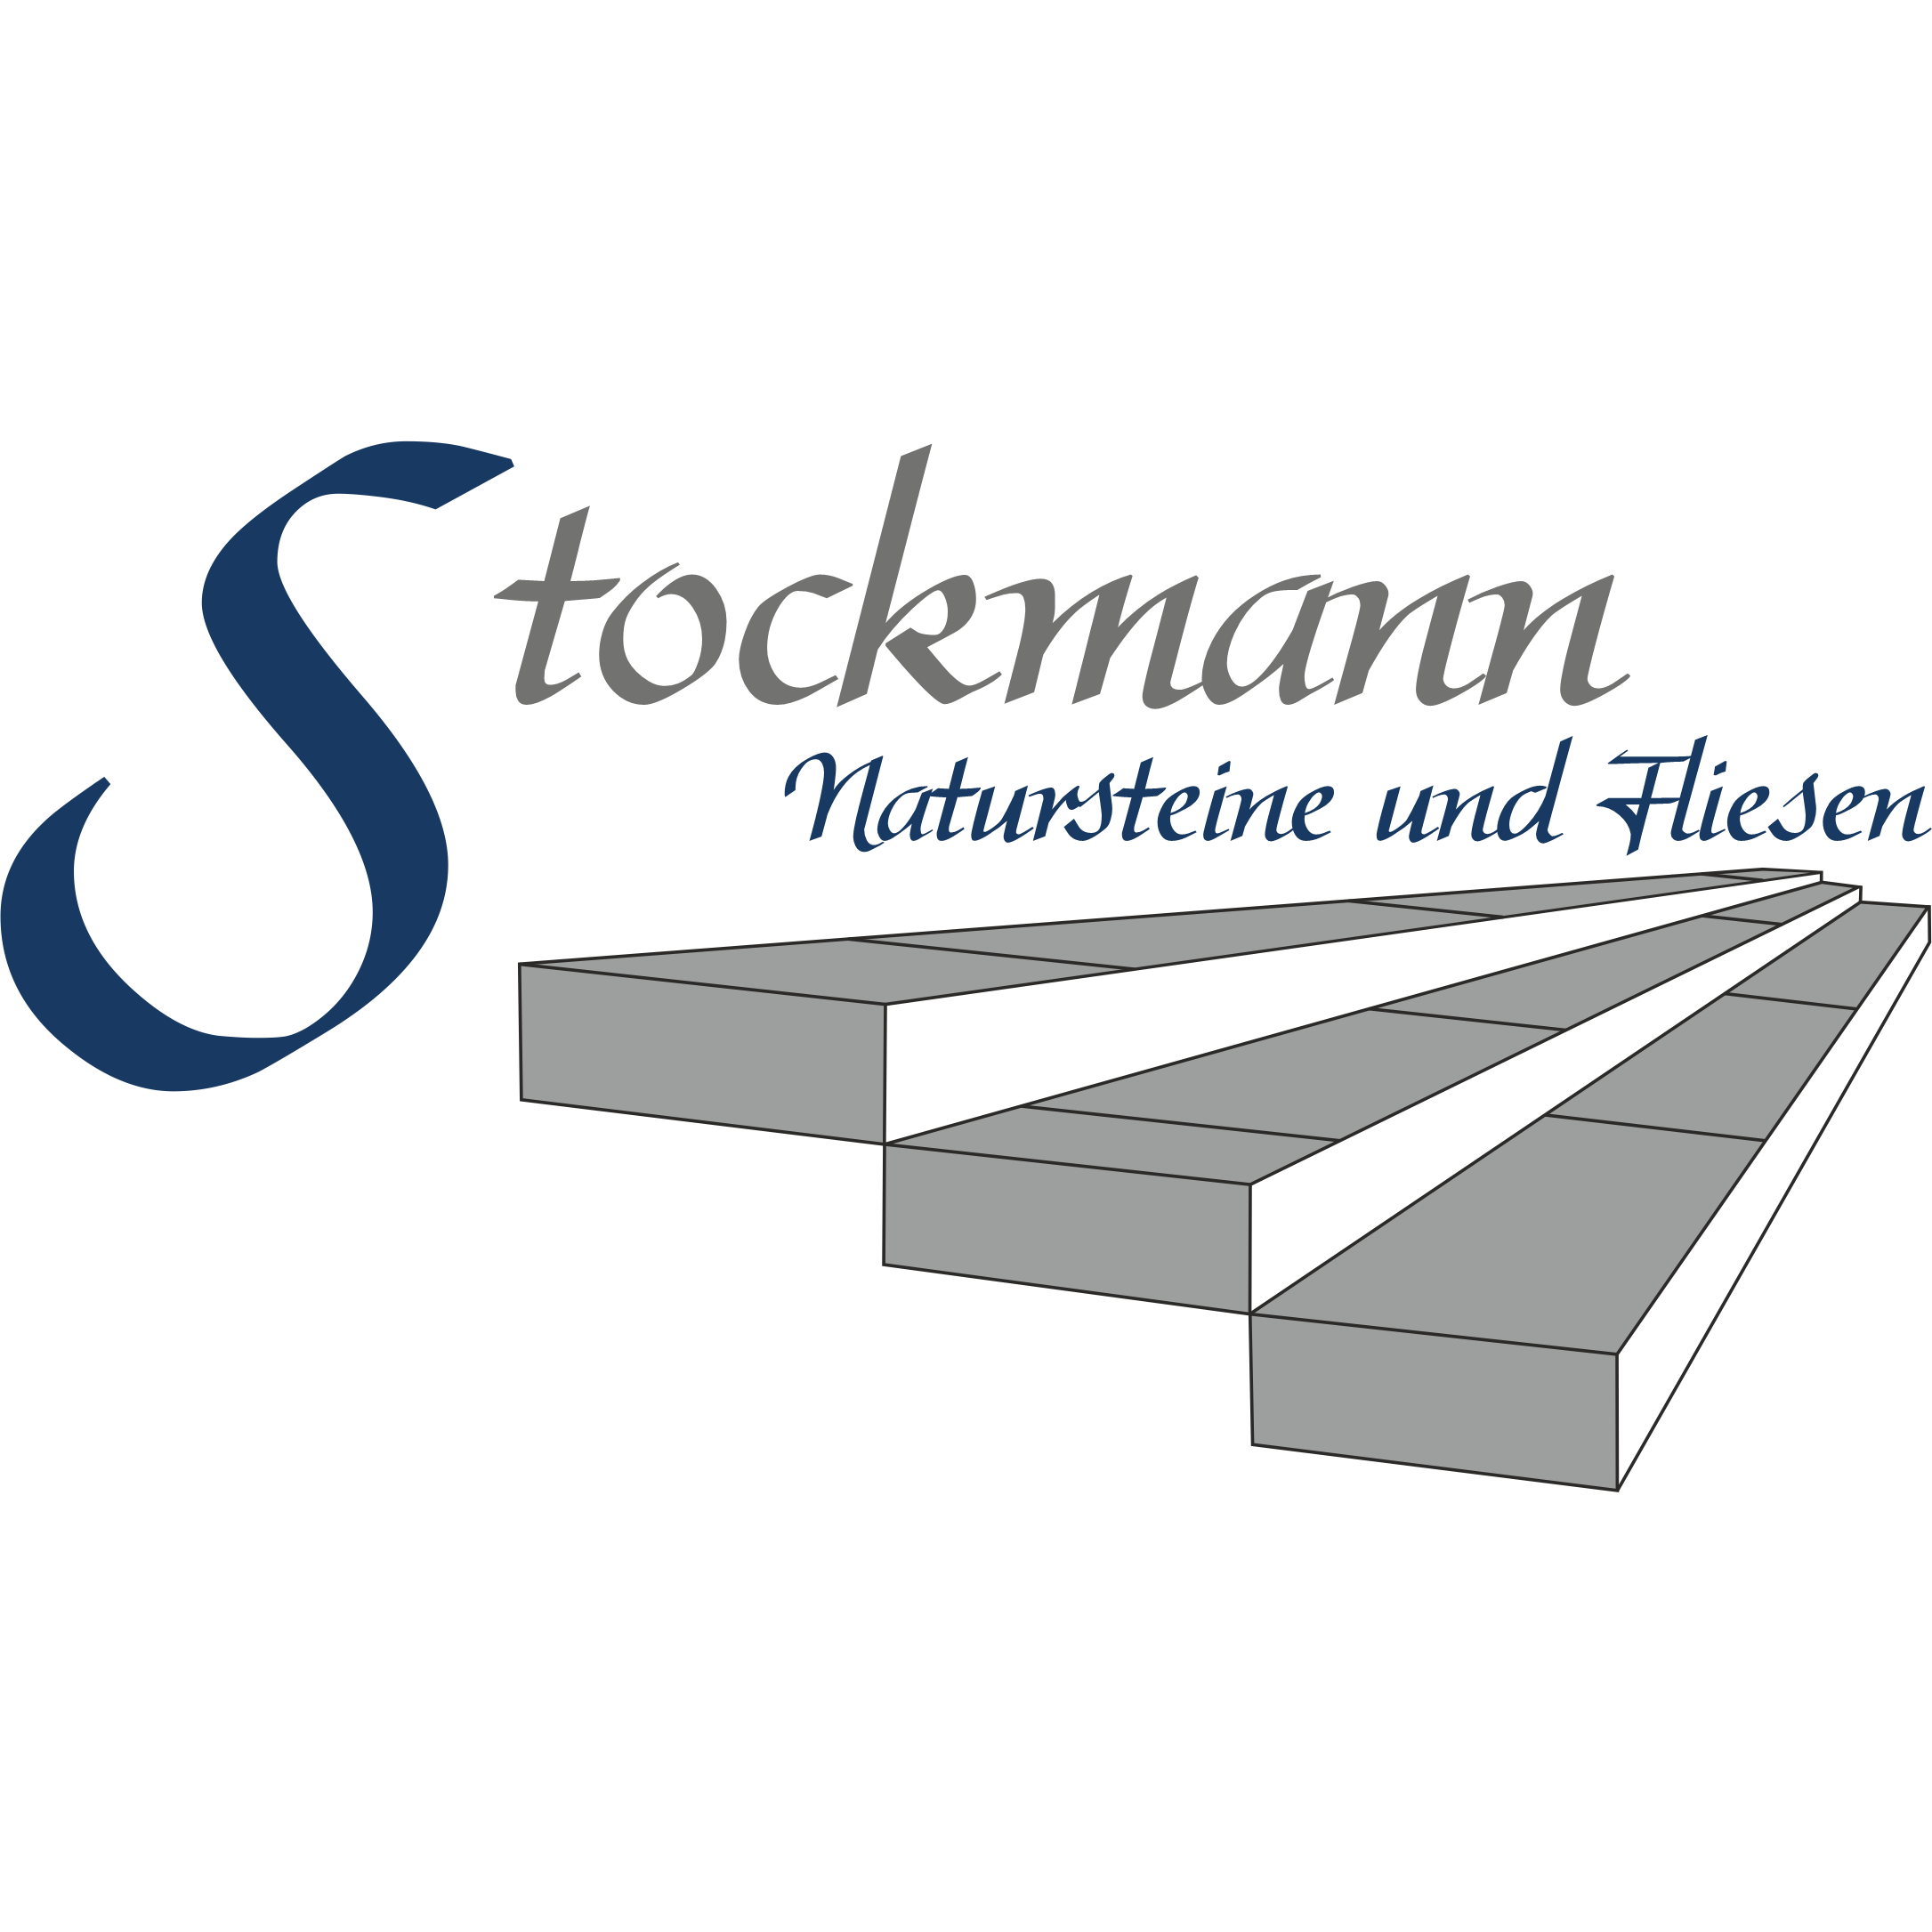 Stockmann - Natursteine und Fliesen in Laupheim - Logo